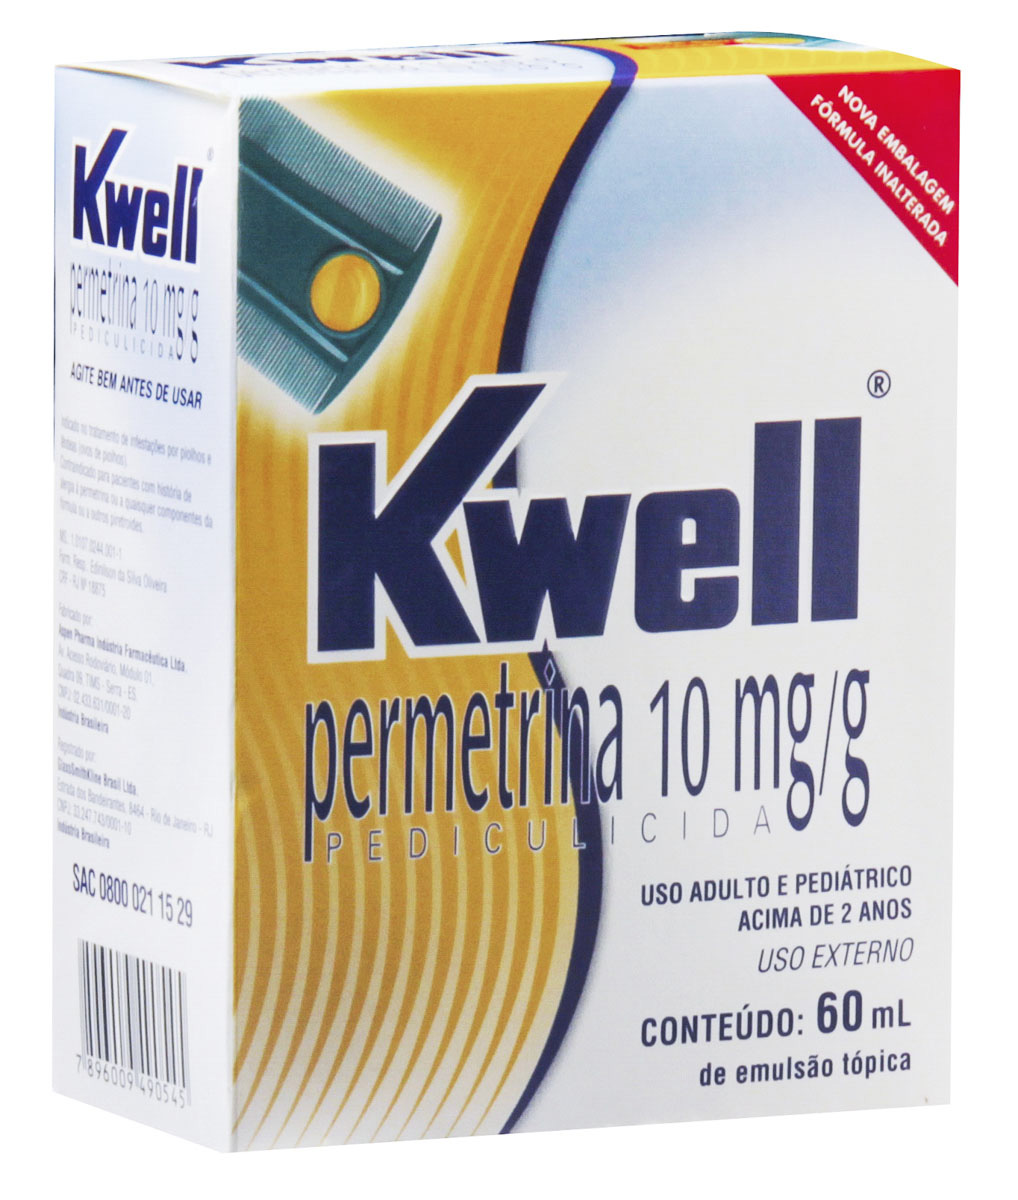 Kwell 10mg/g Emulsão Tópica 60ml